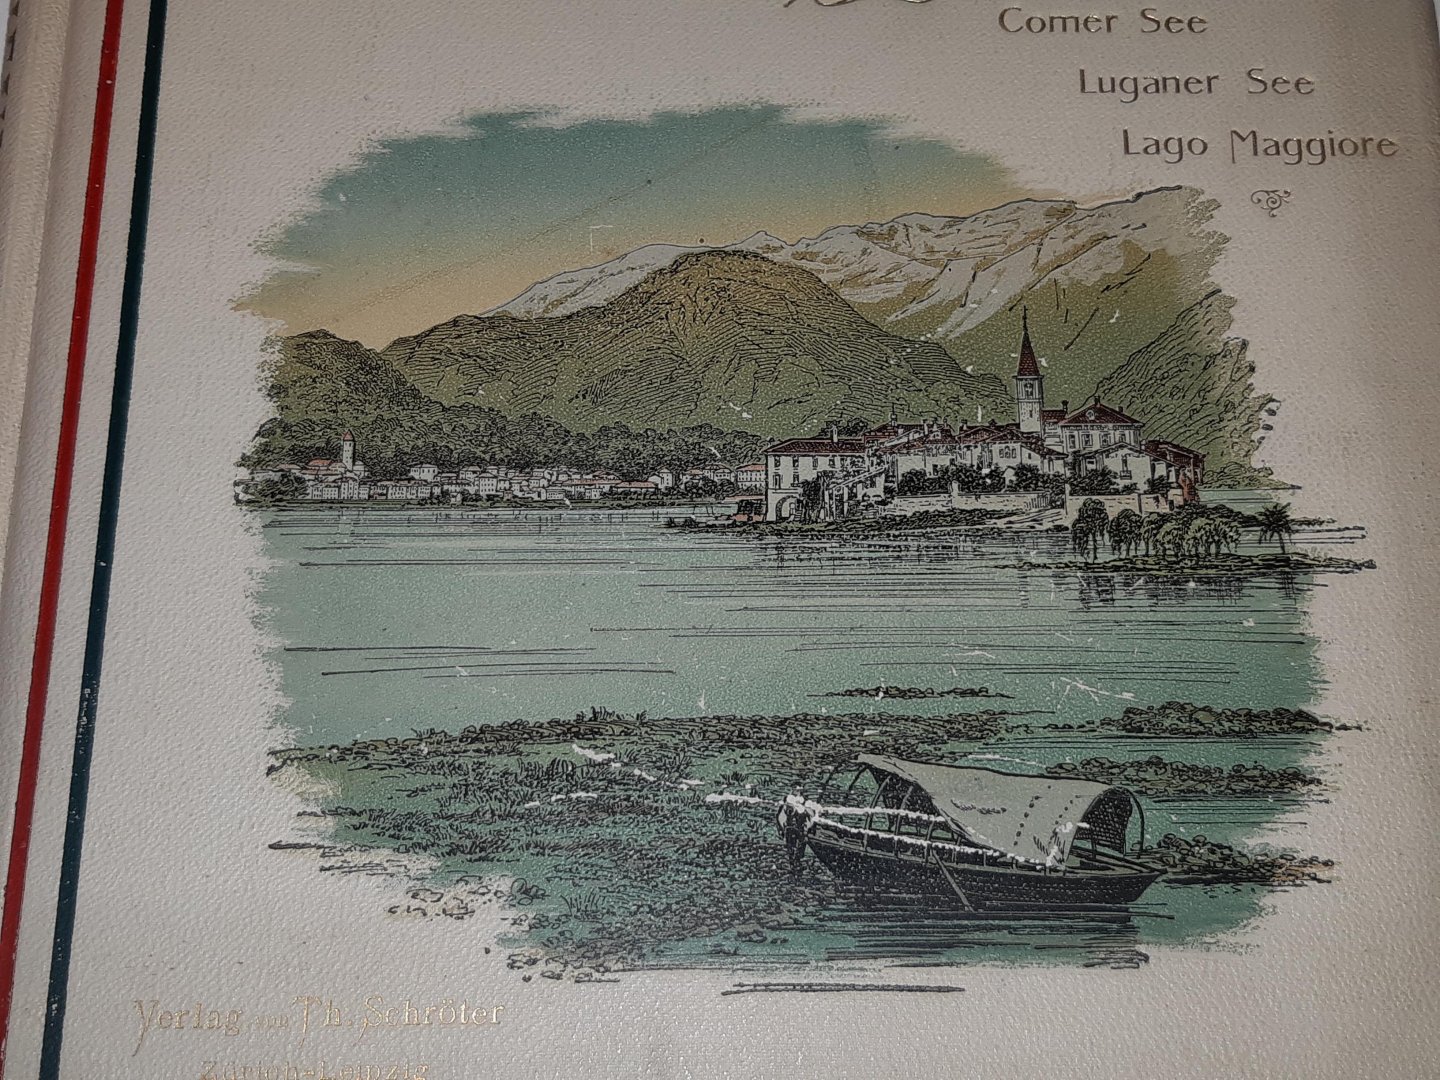 Béha, dr. C. Aug. - Die Italienischen Seen. Comer See * Luganer See * Lago Maggiore